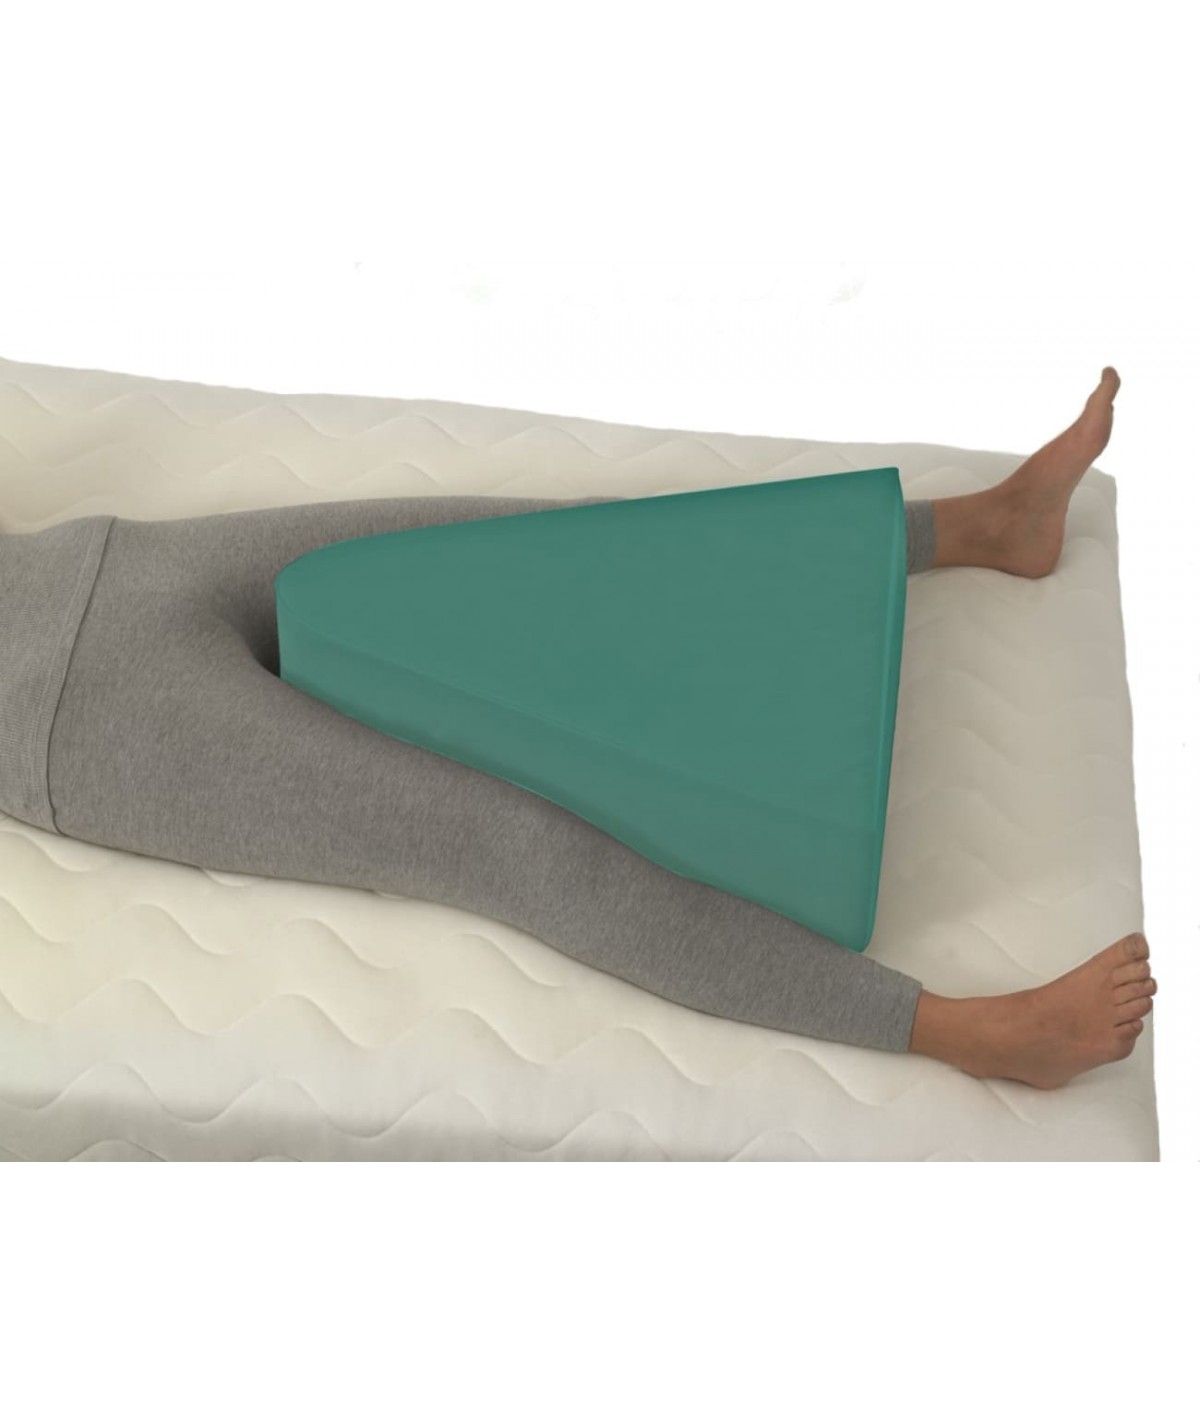 OrtopediaTatiana - 🛌 ℂ𝕆𝕁Íℕ 𝔸𝔹𝔻𝕌ℂ𝕋𝕆ℝ 𝔻𝔼 𝔼𝕊ℙ𝕌𝕄𝔸 🛌  𝓒𝓪𝓻𝓪𝓬𝓽𝓮𝓻í𝓼𝓽𝓲𝓬𝓪𝓼: 🛌Cojín o almohada para la abducción de  cadera es